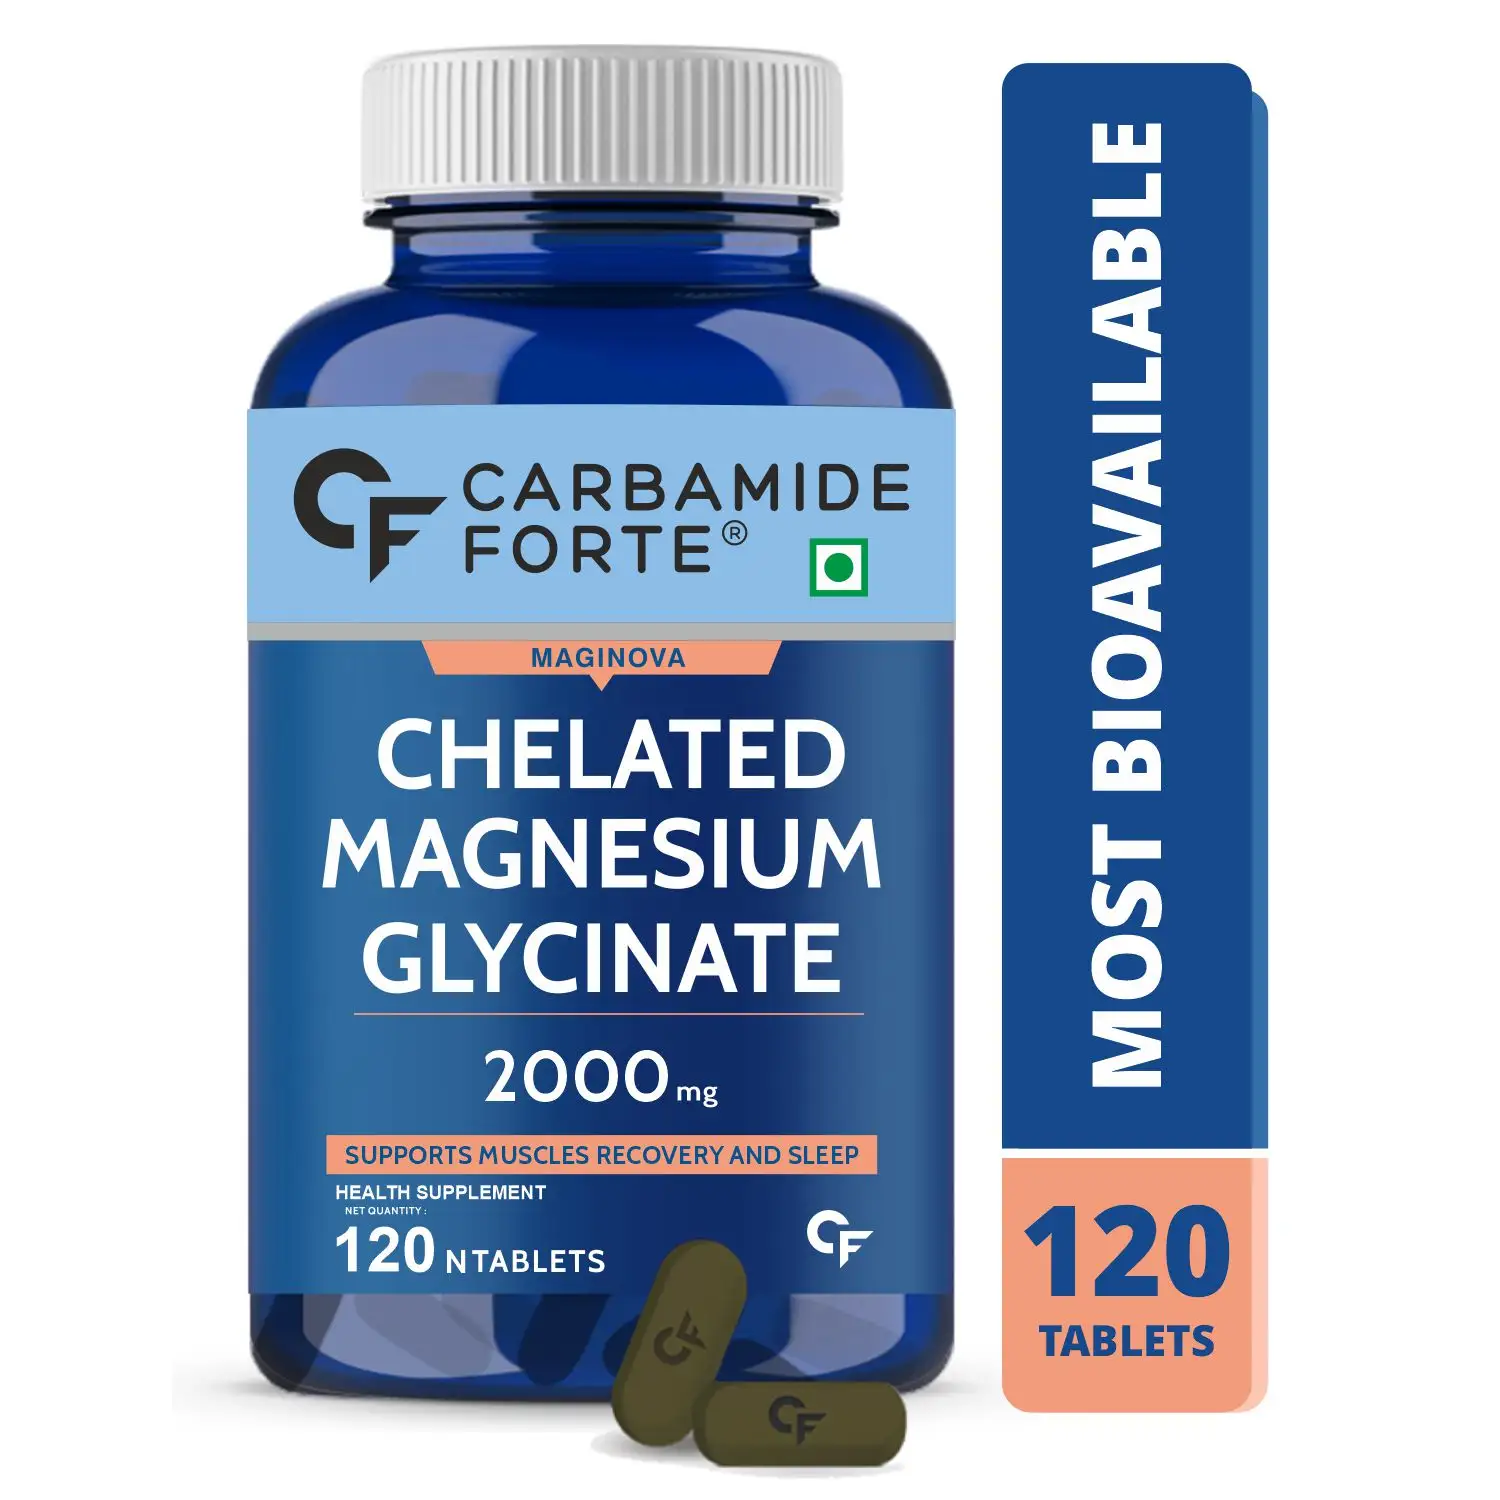 La tablette de supplément de Glycinate de magnésium chélaté de 2000mg favorise une meilleure aide au sommeil, la santé et la récupération musculaire